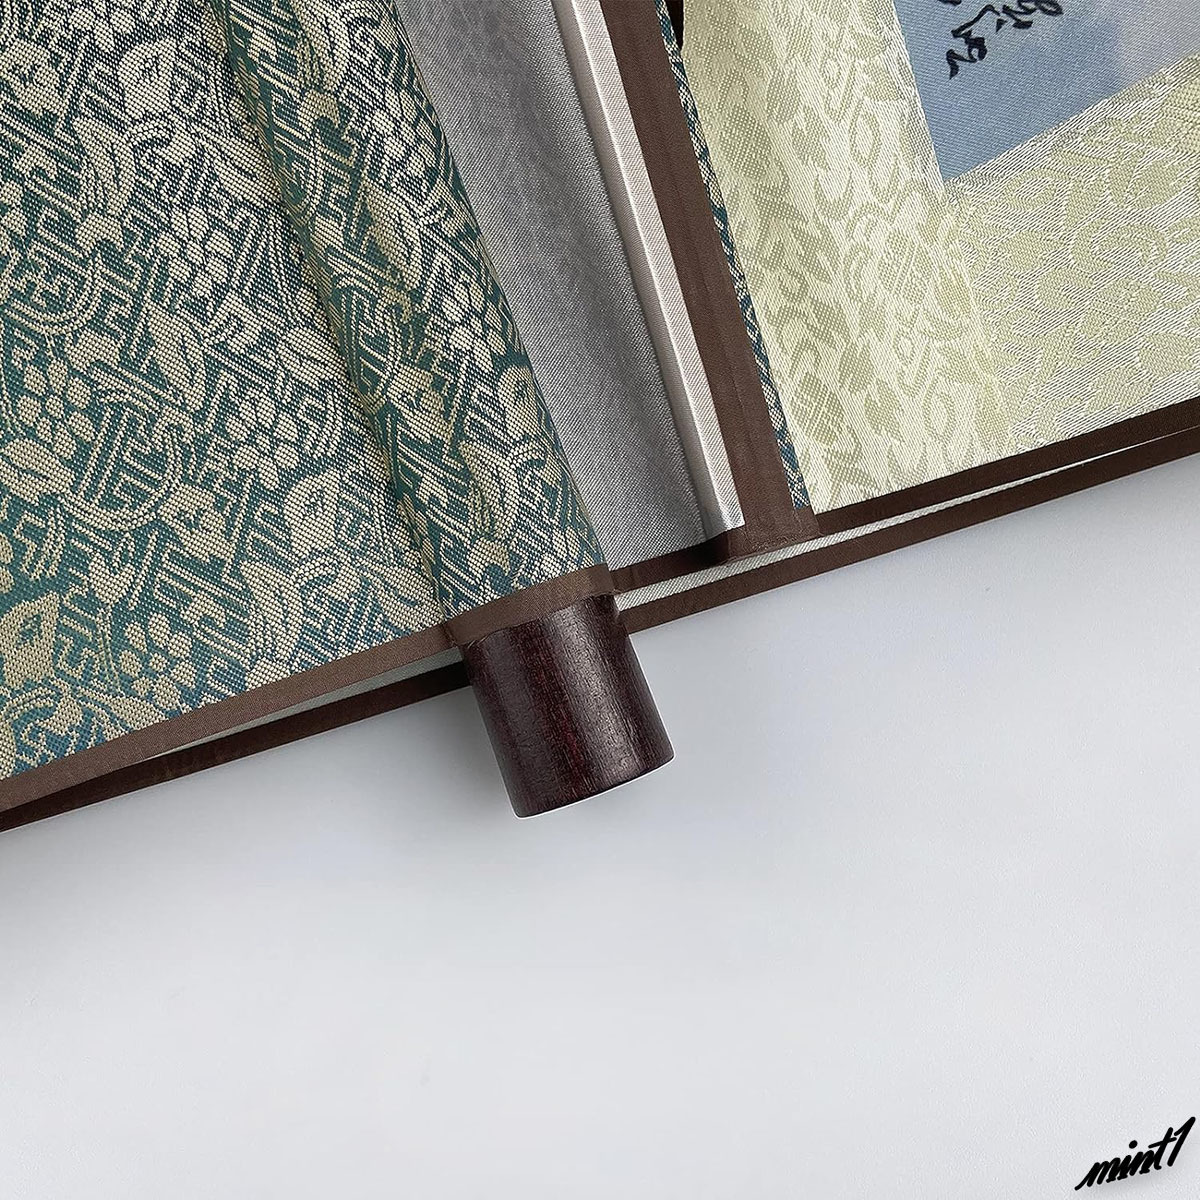 【水墨画のように描いた】 タペストリー 93×36cm レーヨン 平織り 耐久性 インテリア 和風 アジアンテイスト 風景画 山脈 滝 掛け軸